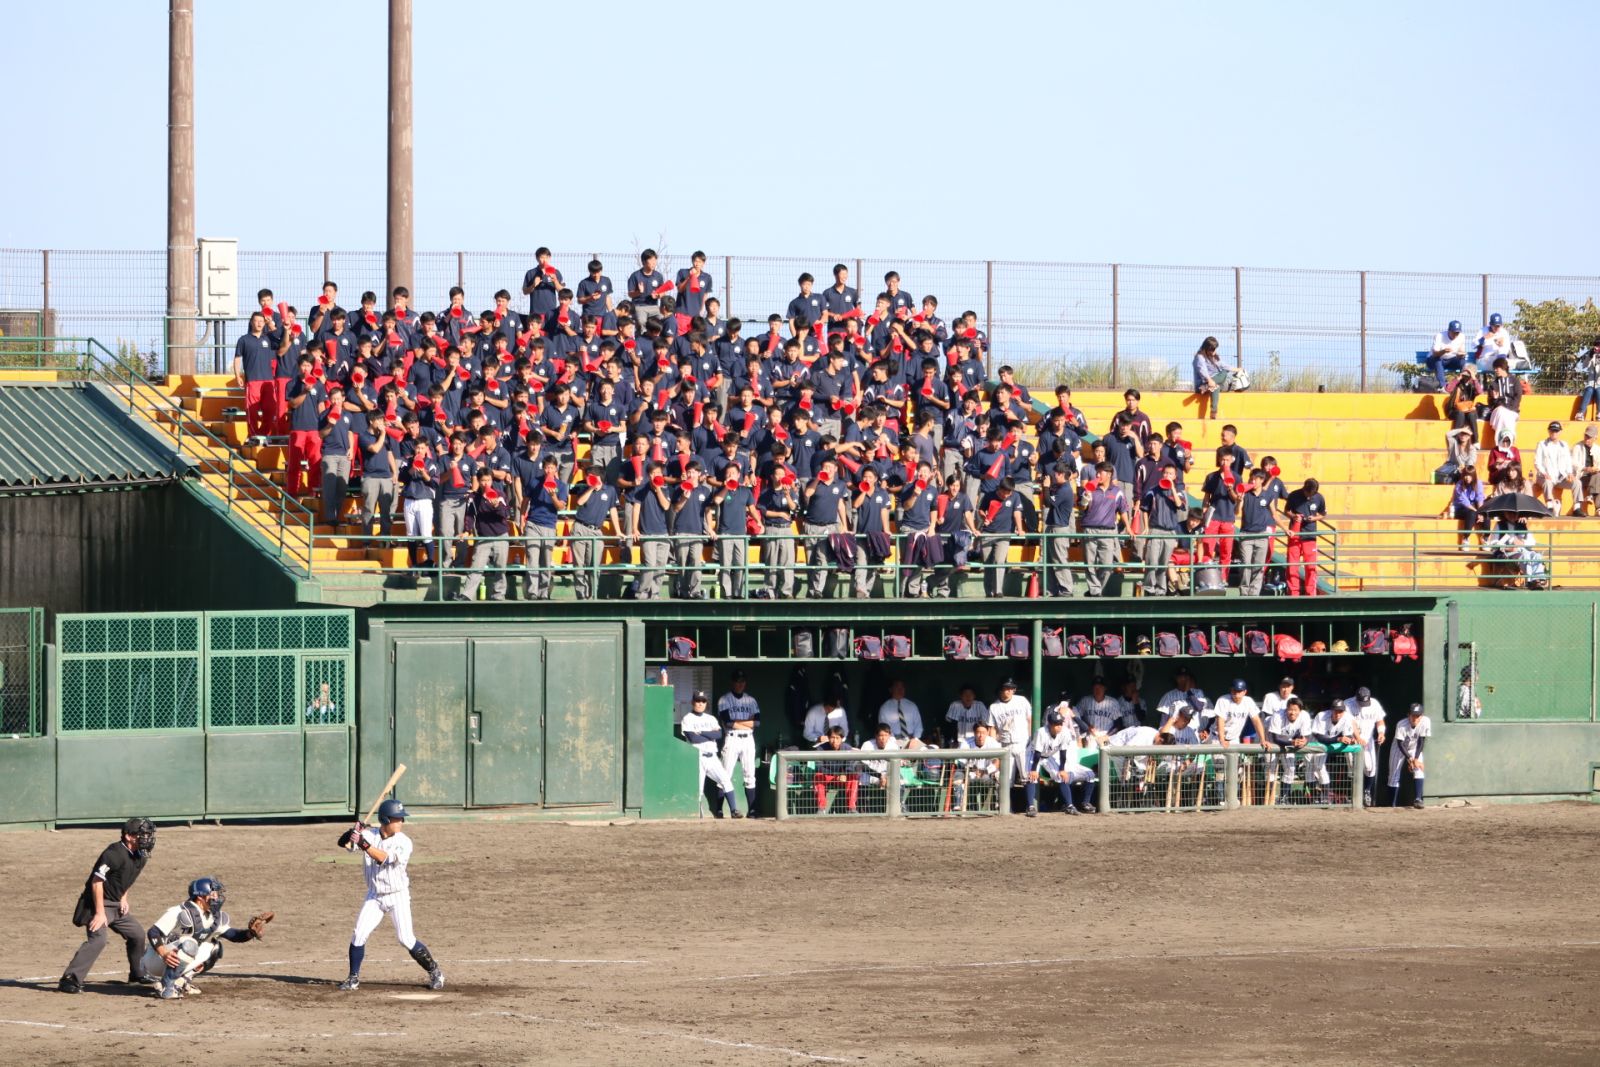 硬式野球部 仙台六大学野球学野球 秋季リーグ戦の全日程が終了 仙台大学